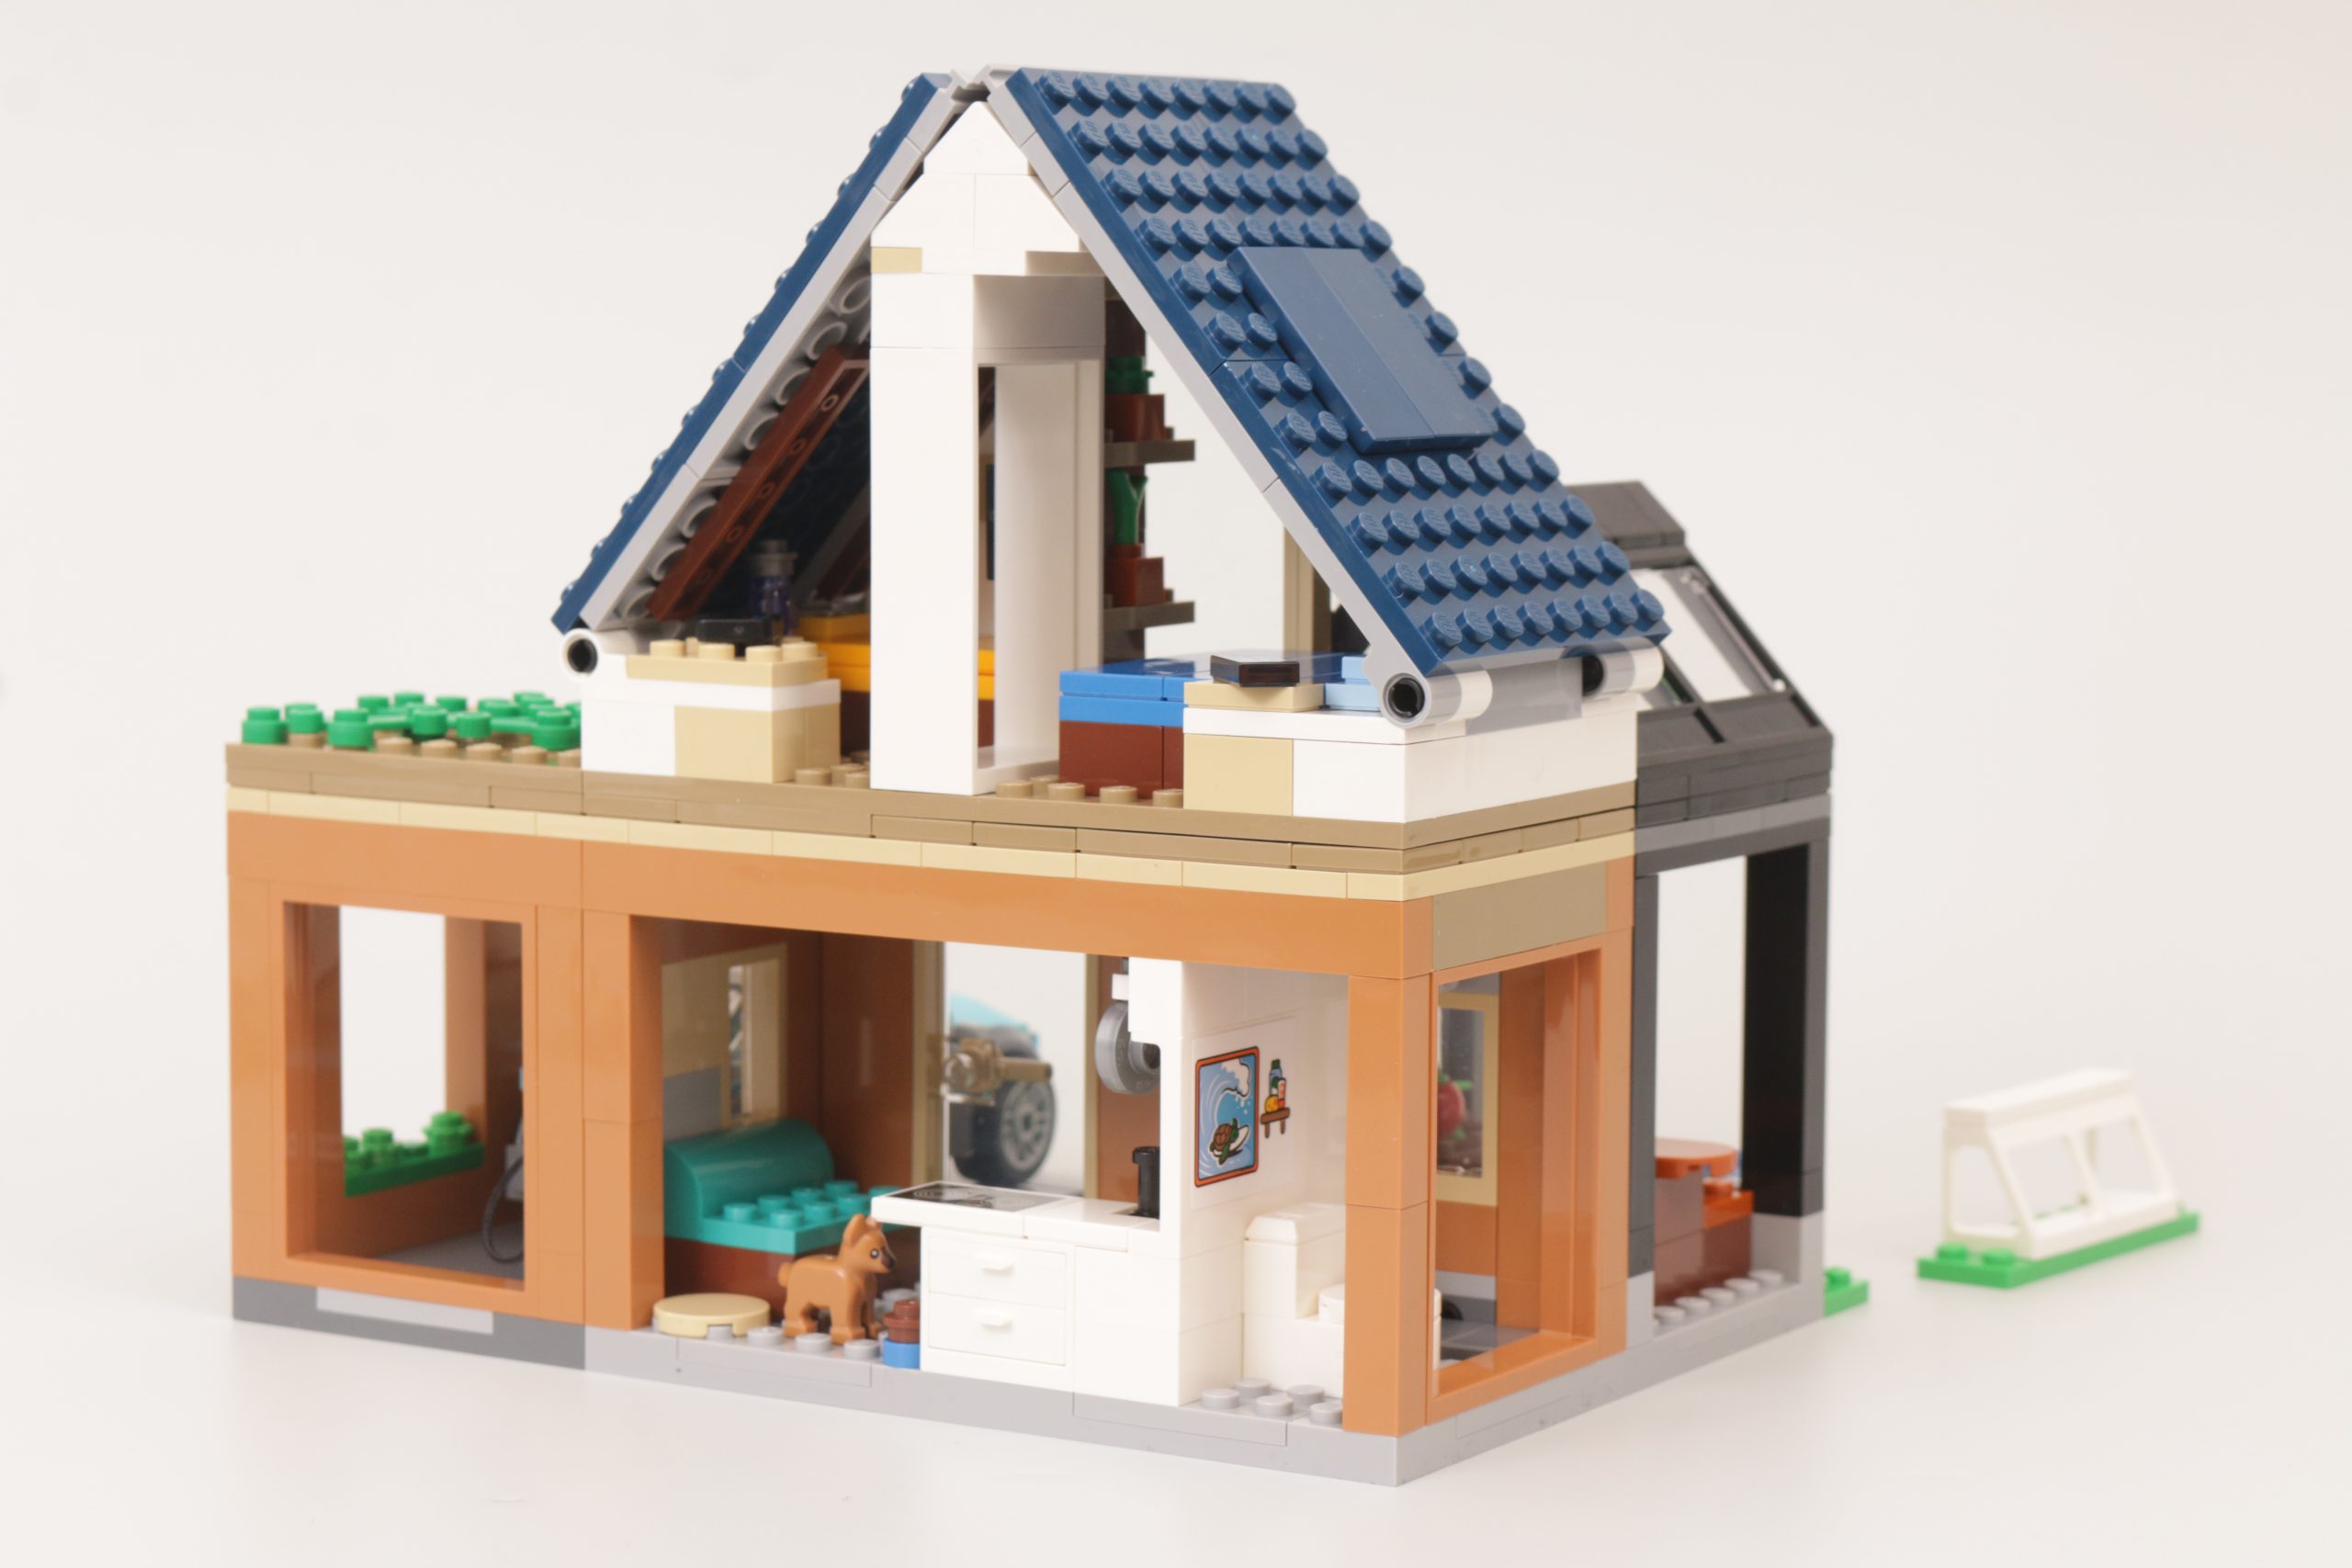 Lego City La maison familiale